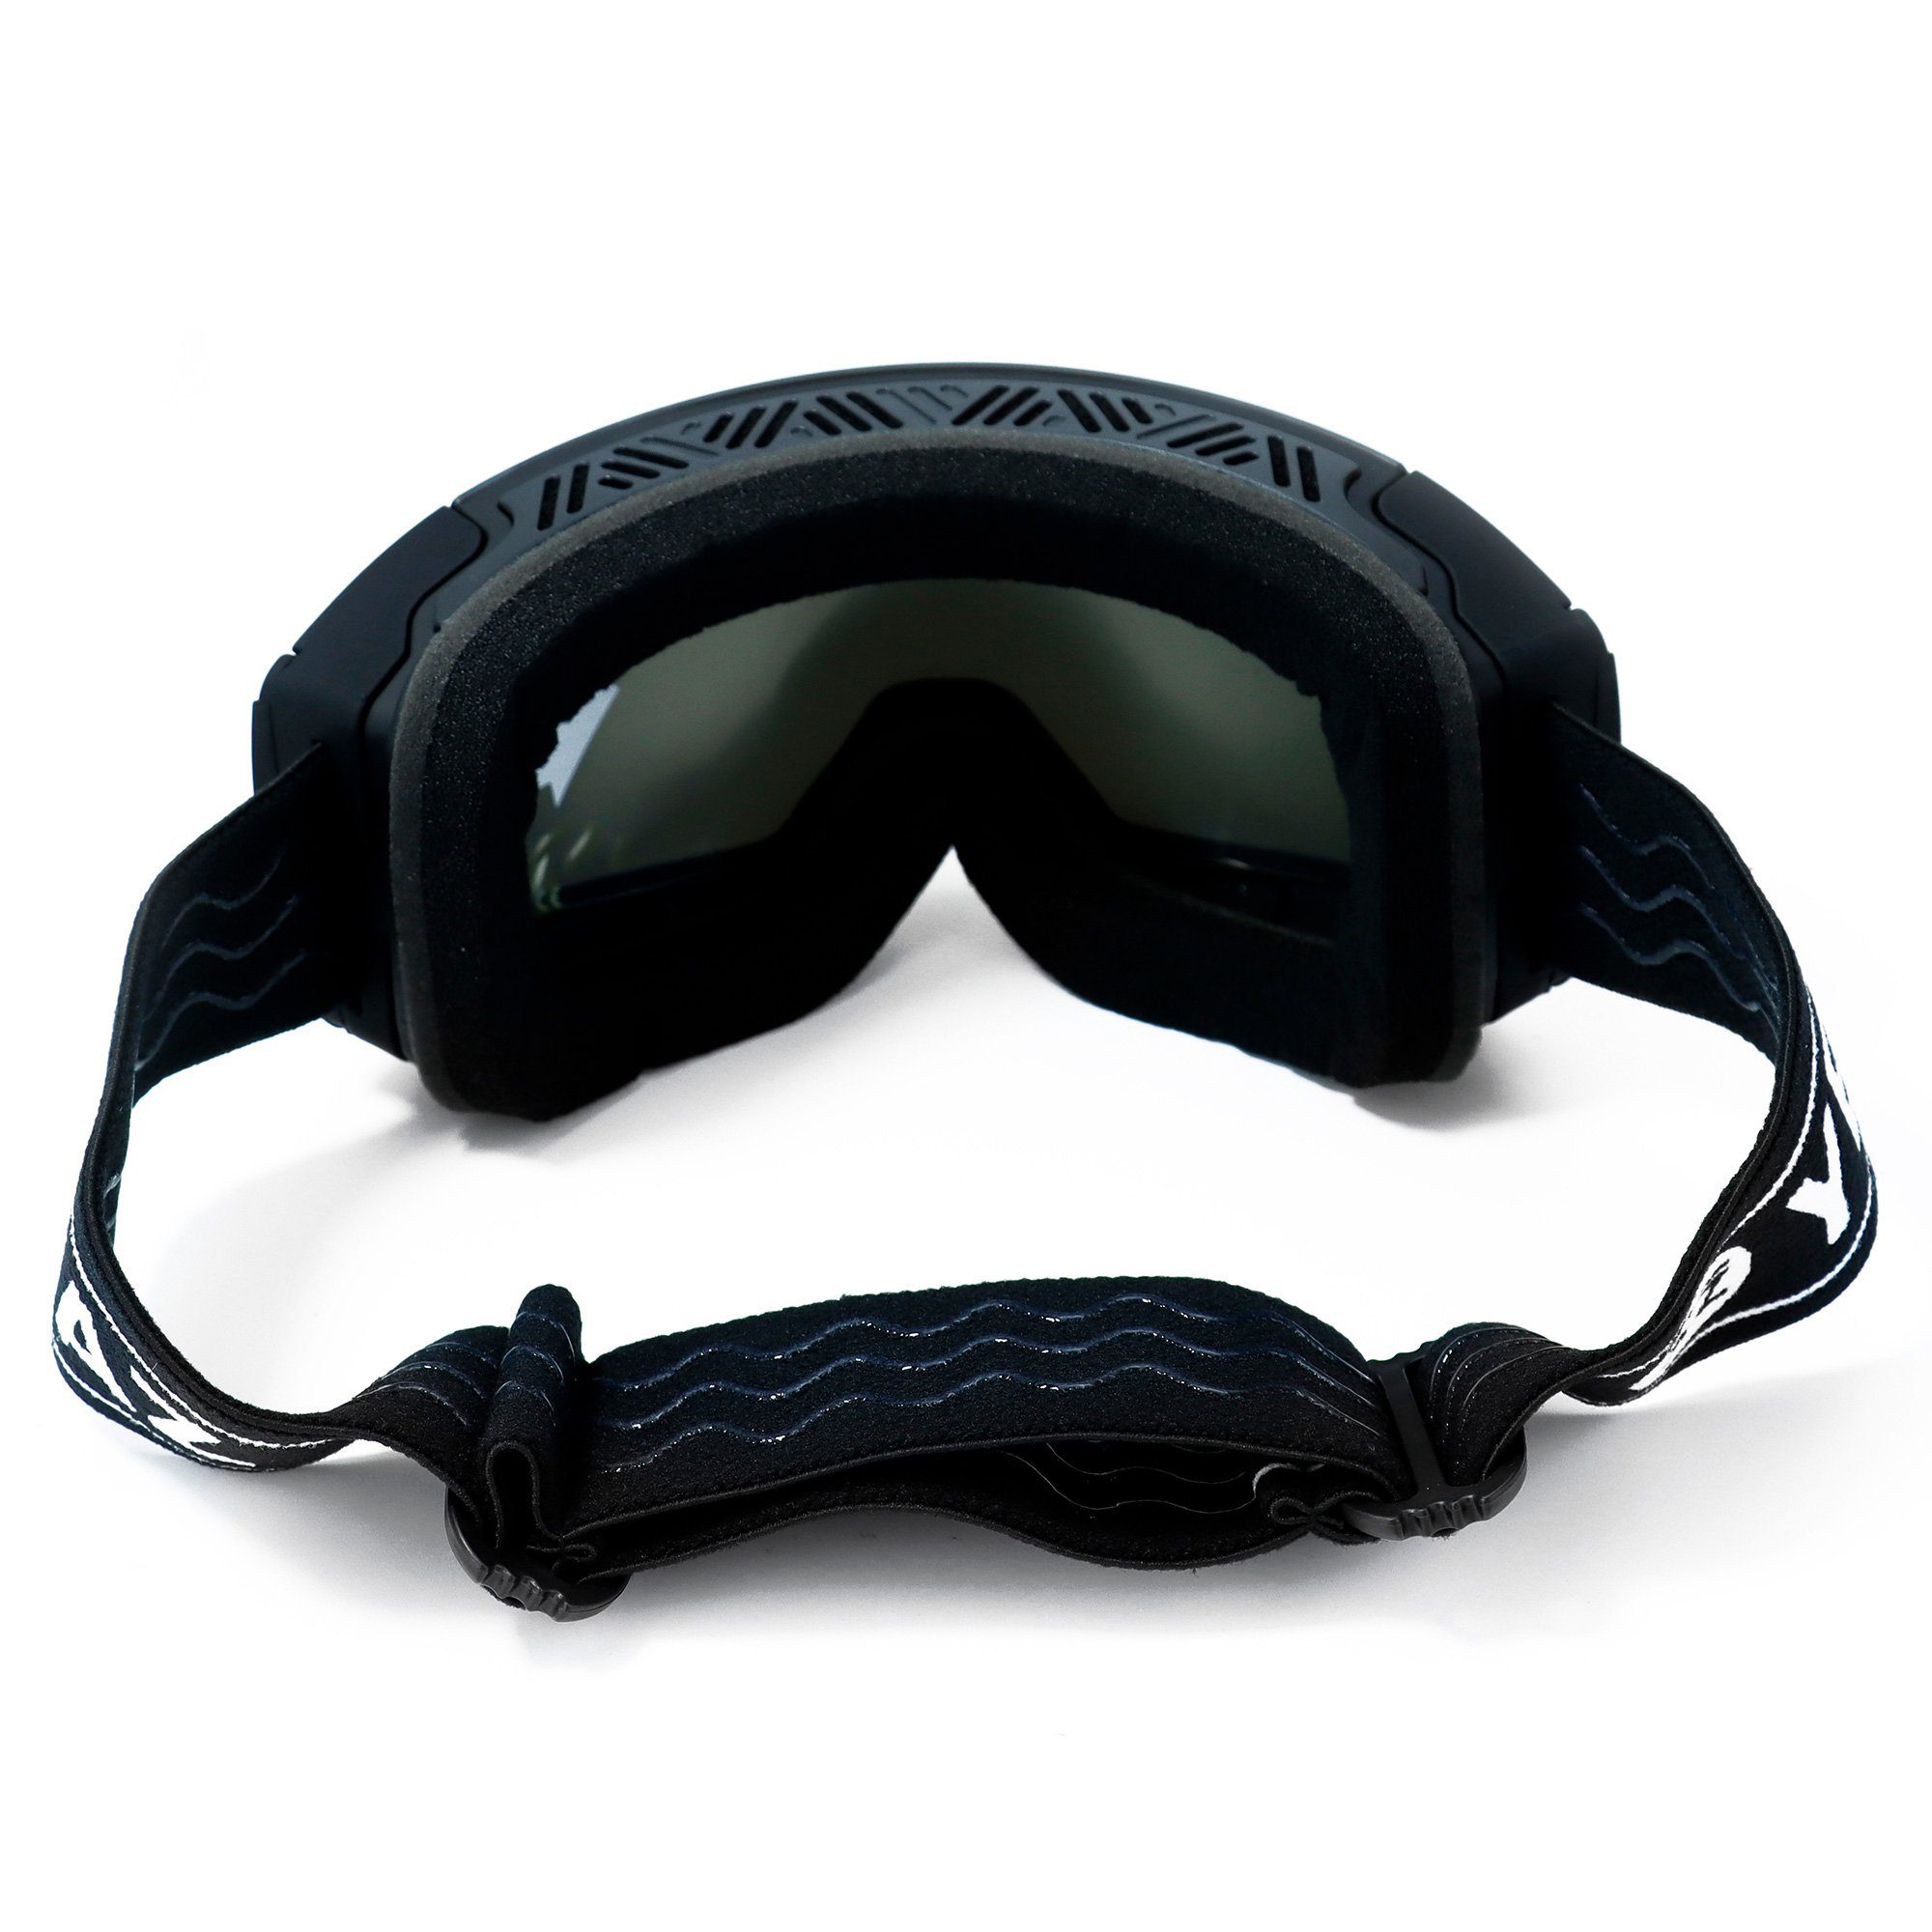 Kinder Accessoires YEAZ Skibrille TWEAK-X, Premium-Ski- und Snowboardbrille für Erwachsene und Jugendliche